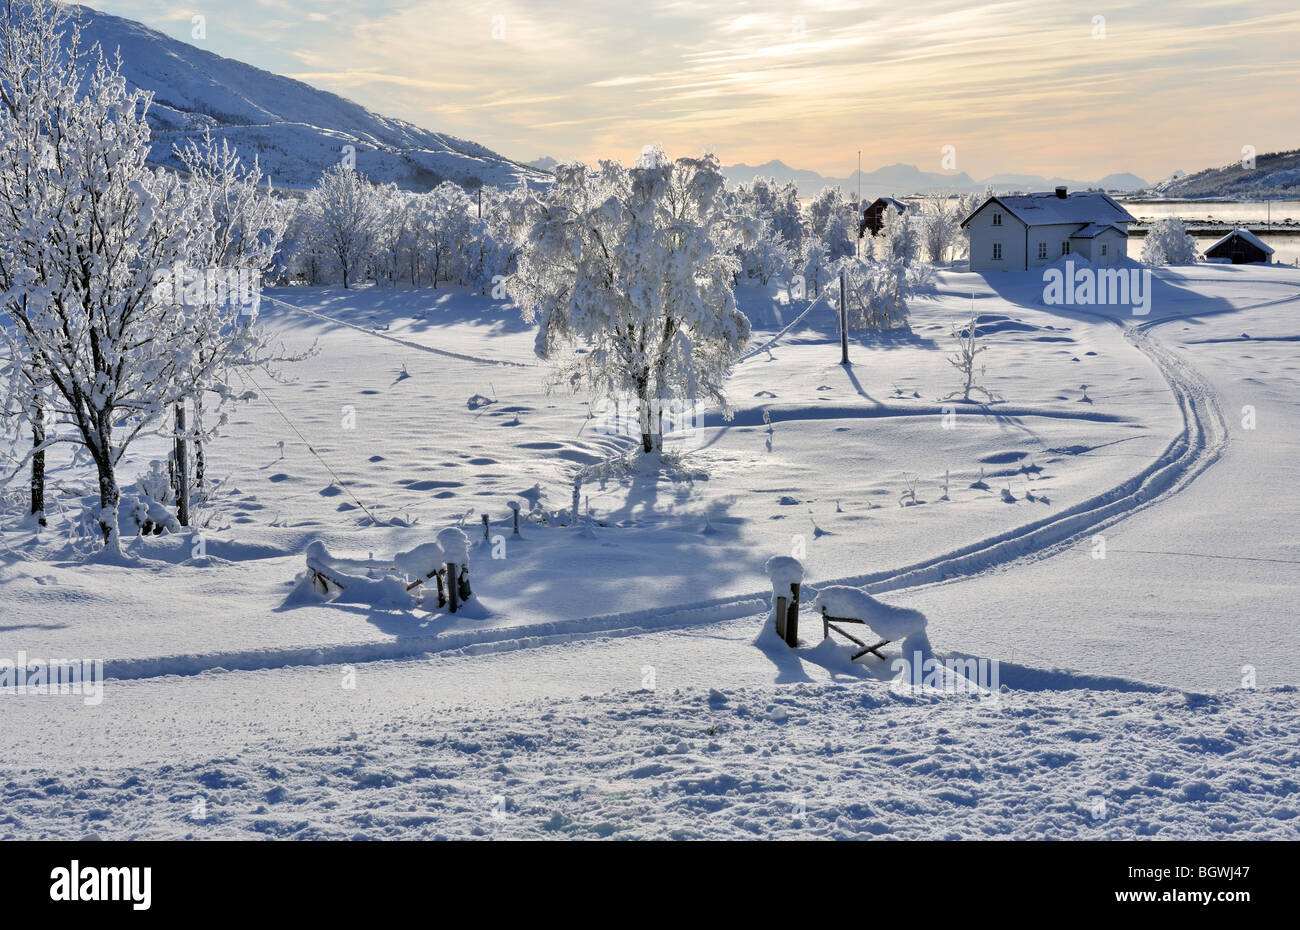 Scena invernale con una casa bianca nel Nordland, a nord della Norvegia a nord del circolo polare artico. Foto Stock